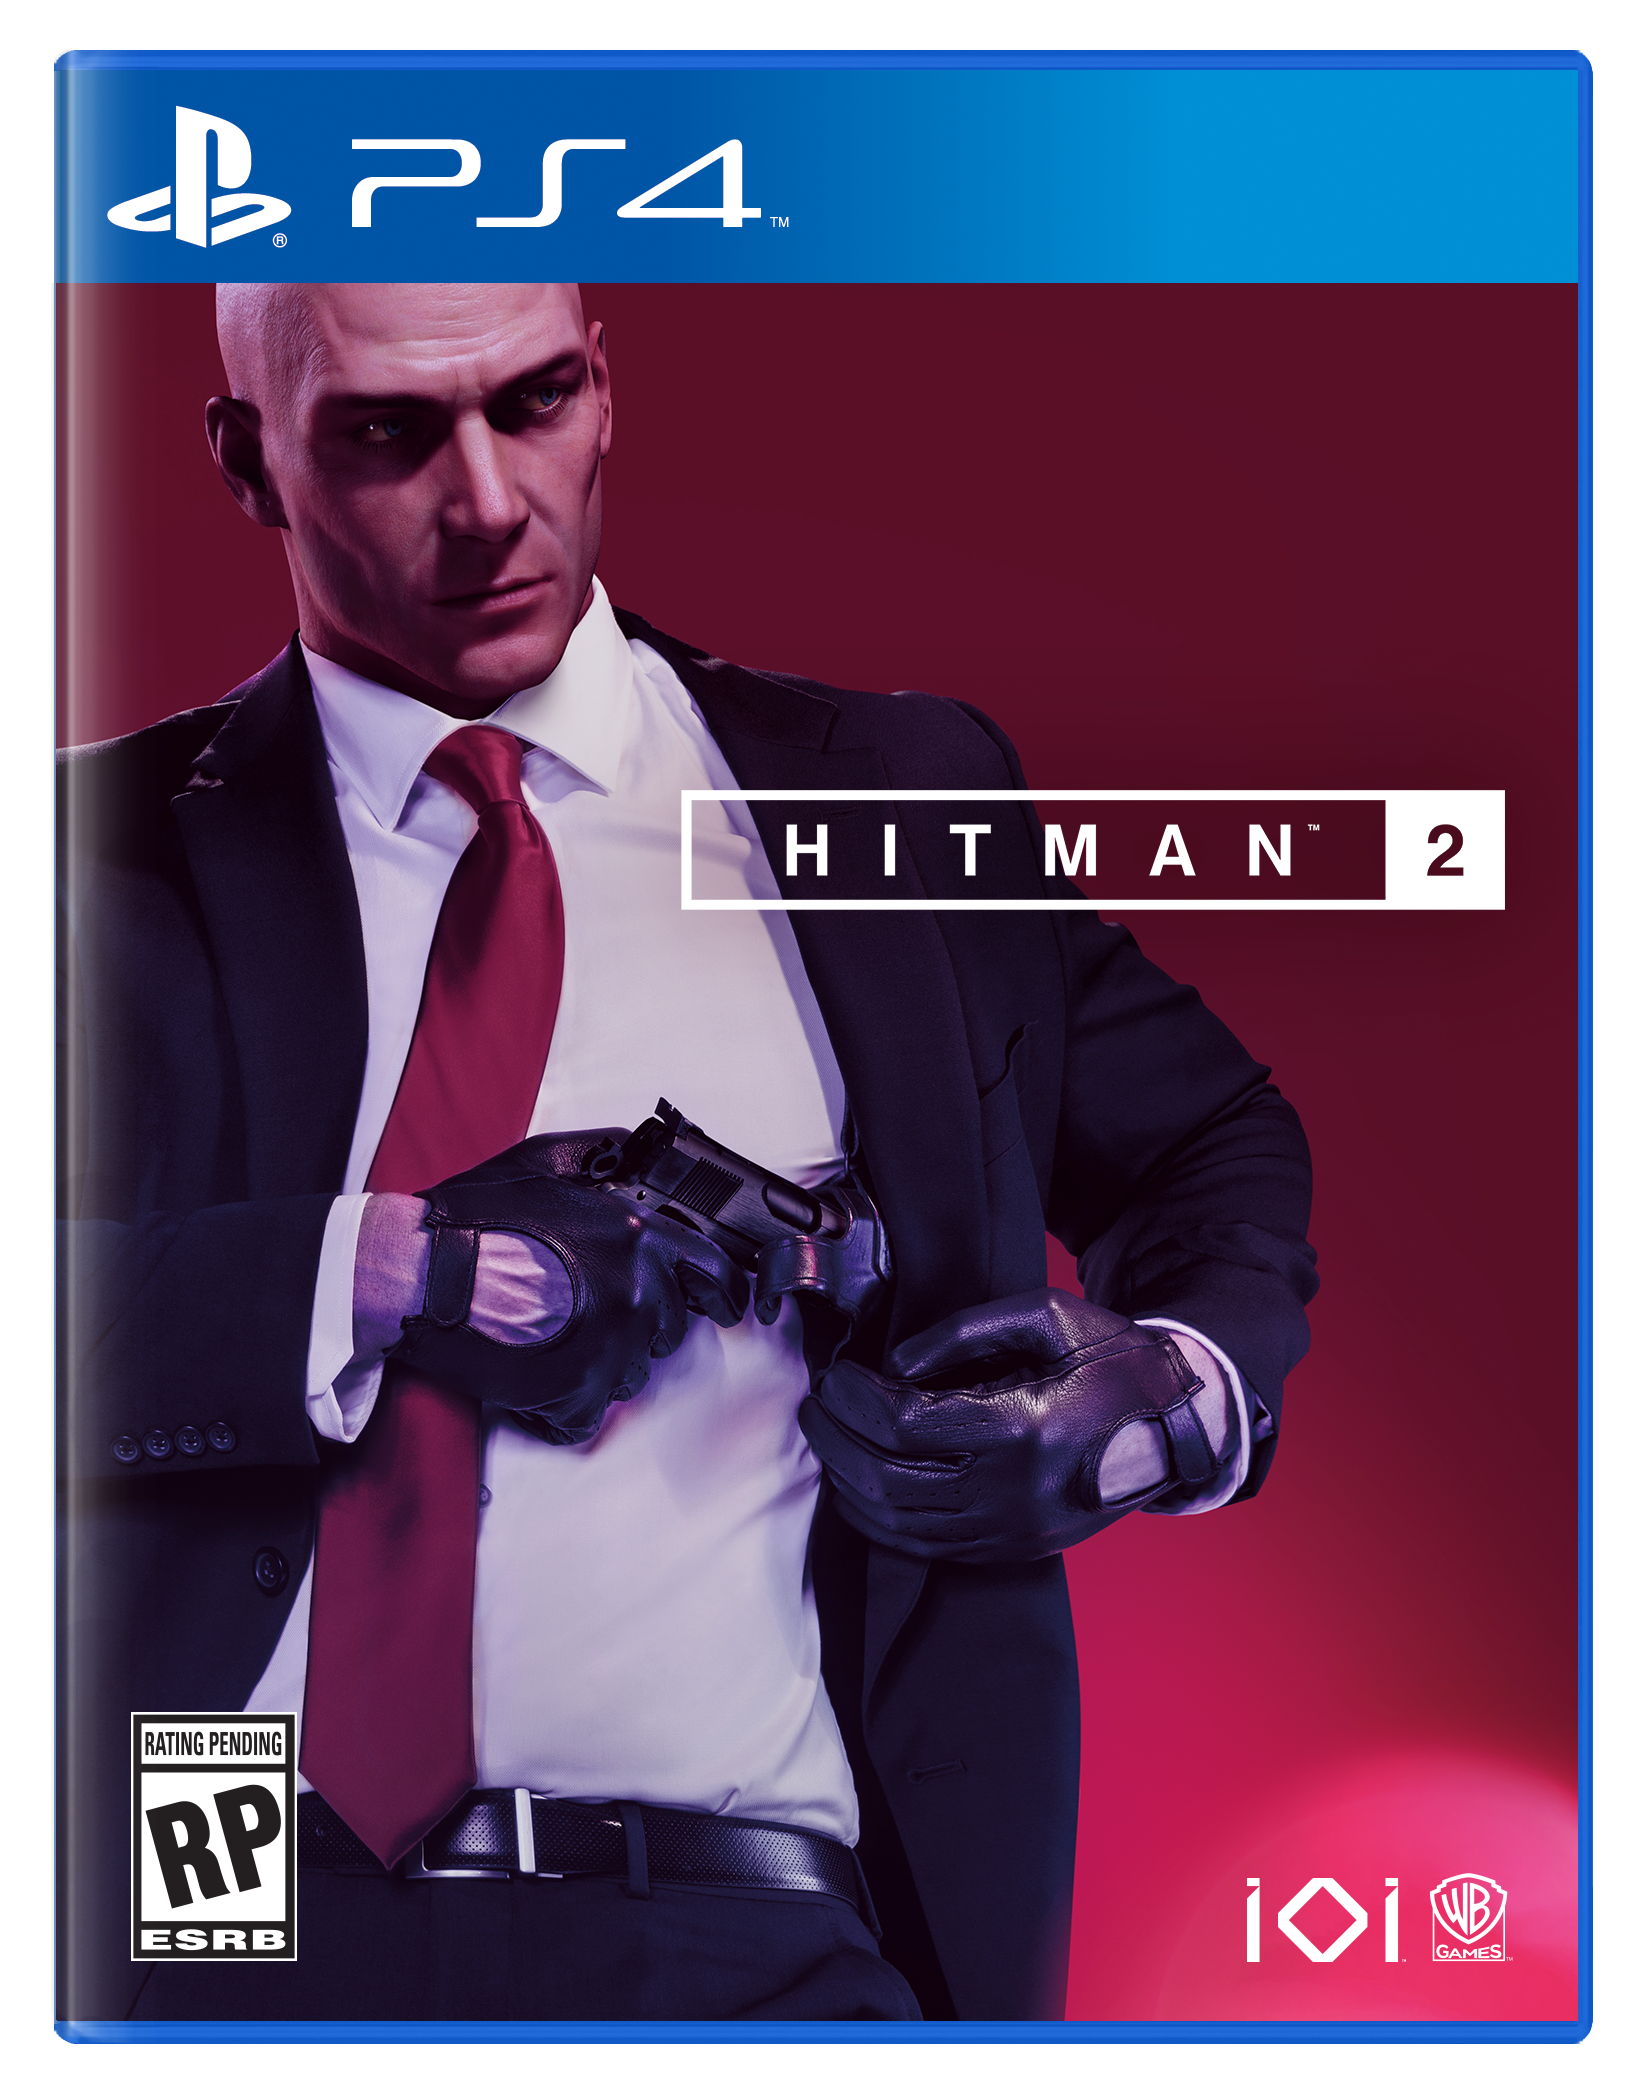 Hitman 2 PlayStation 4 cover (WB Games/IOInteractive)